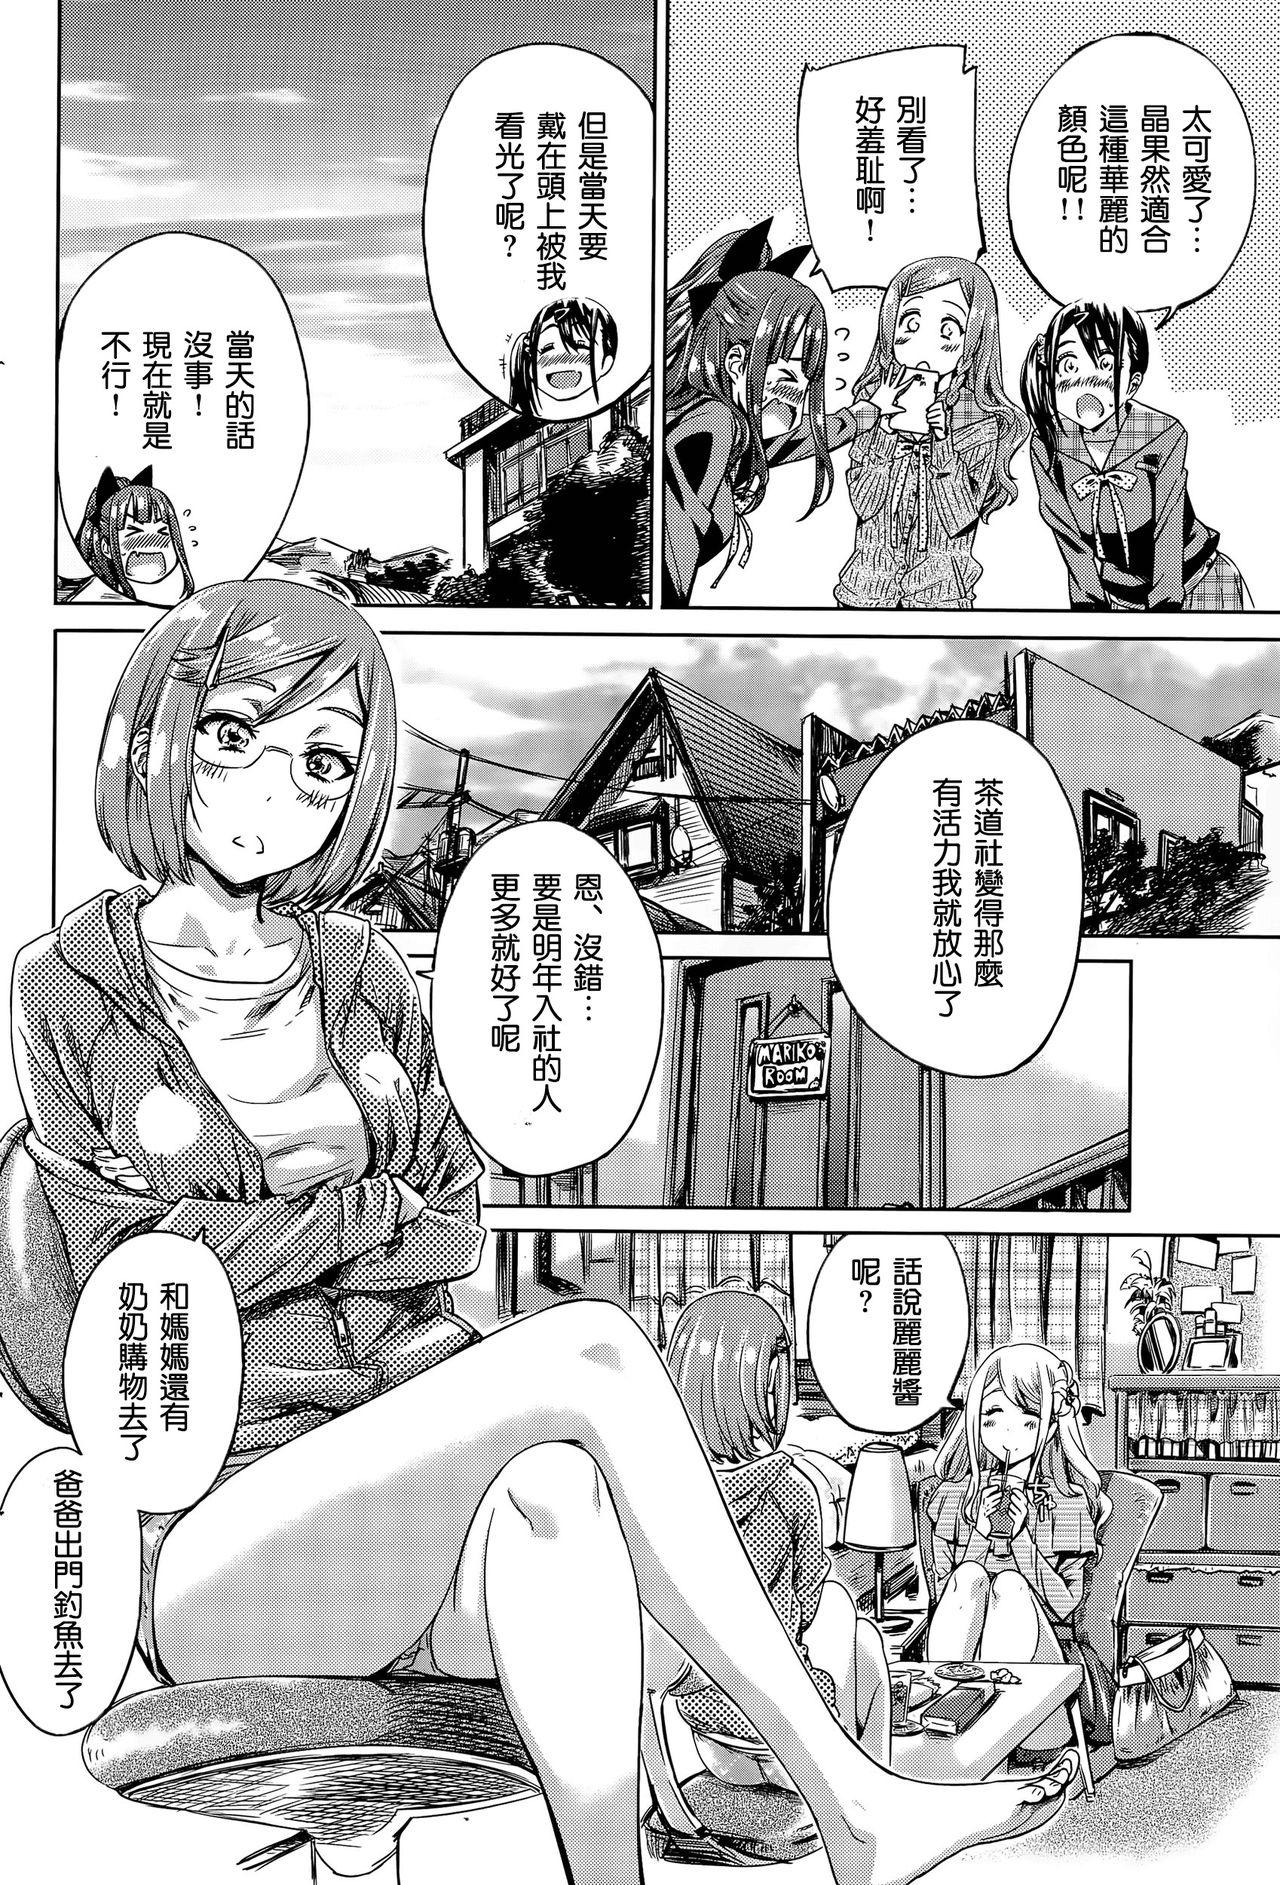 Exposed Nadeshiko Hiyori #5 Celeb - Page 9